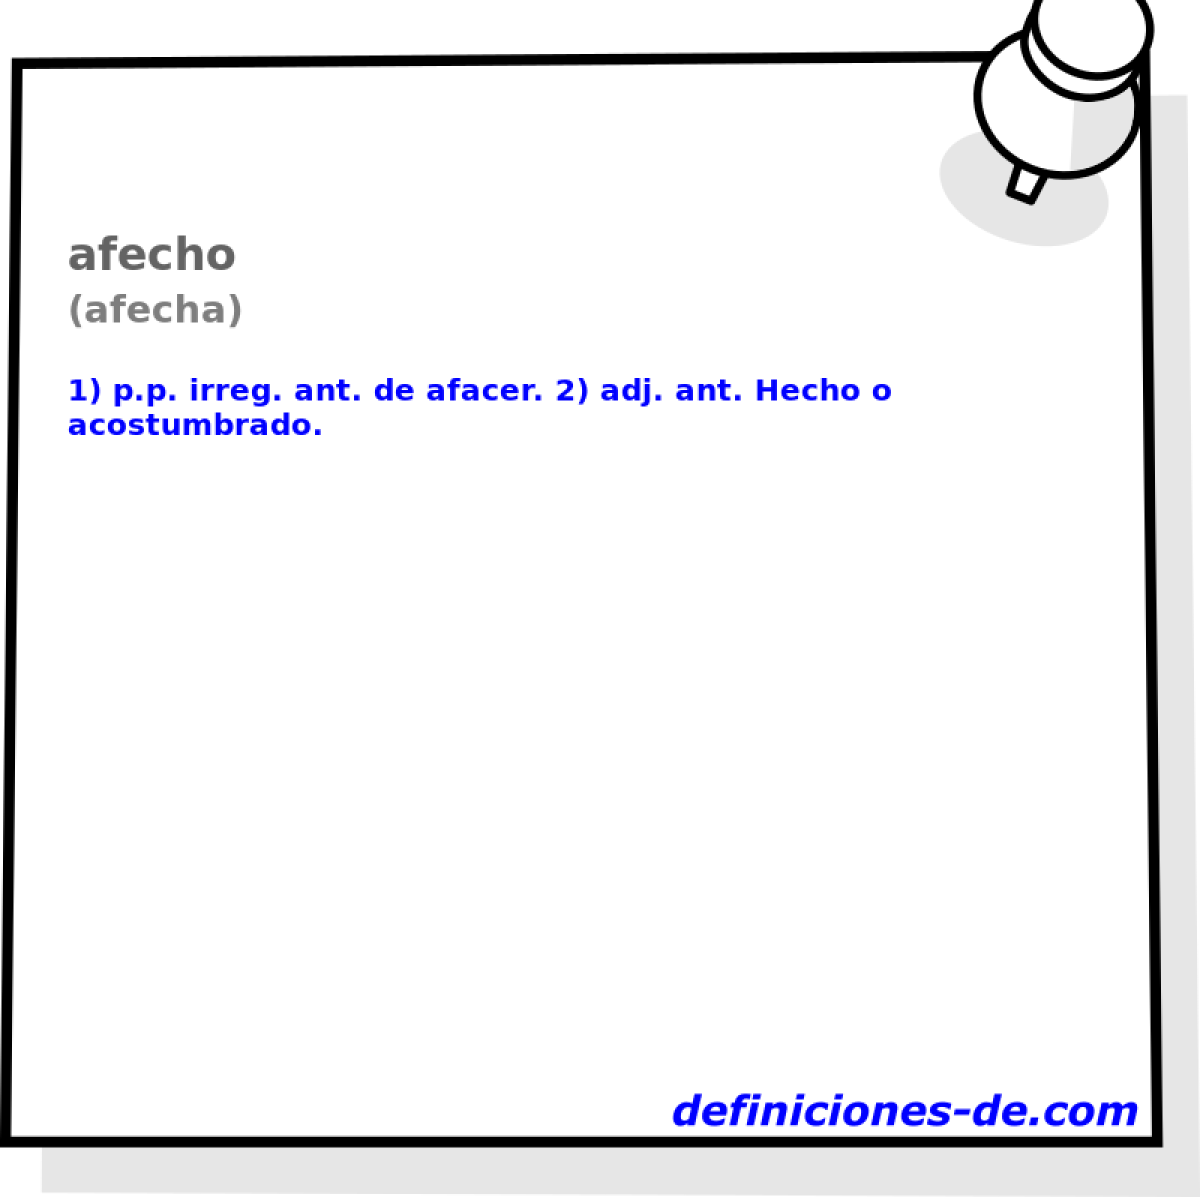 afecho (afecha)